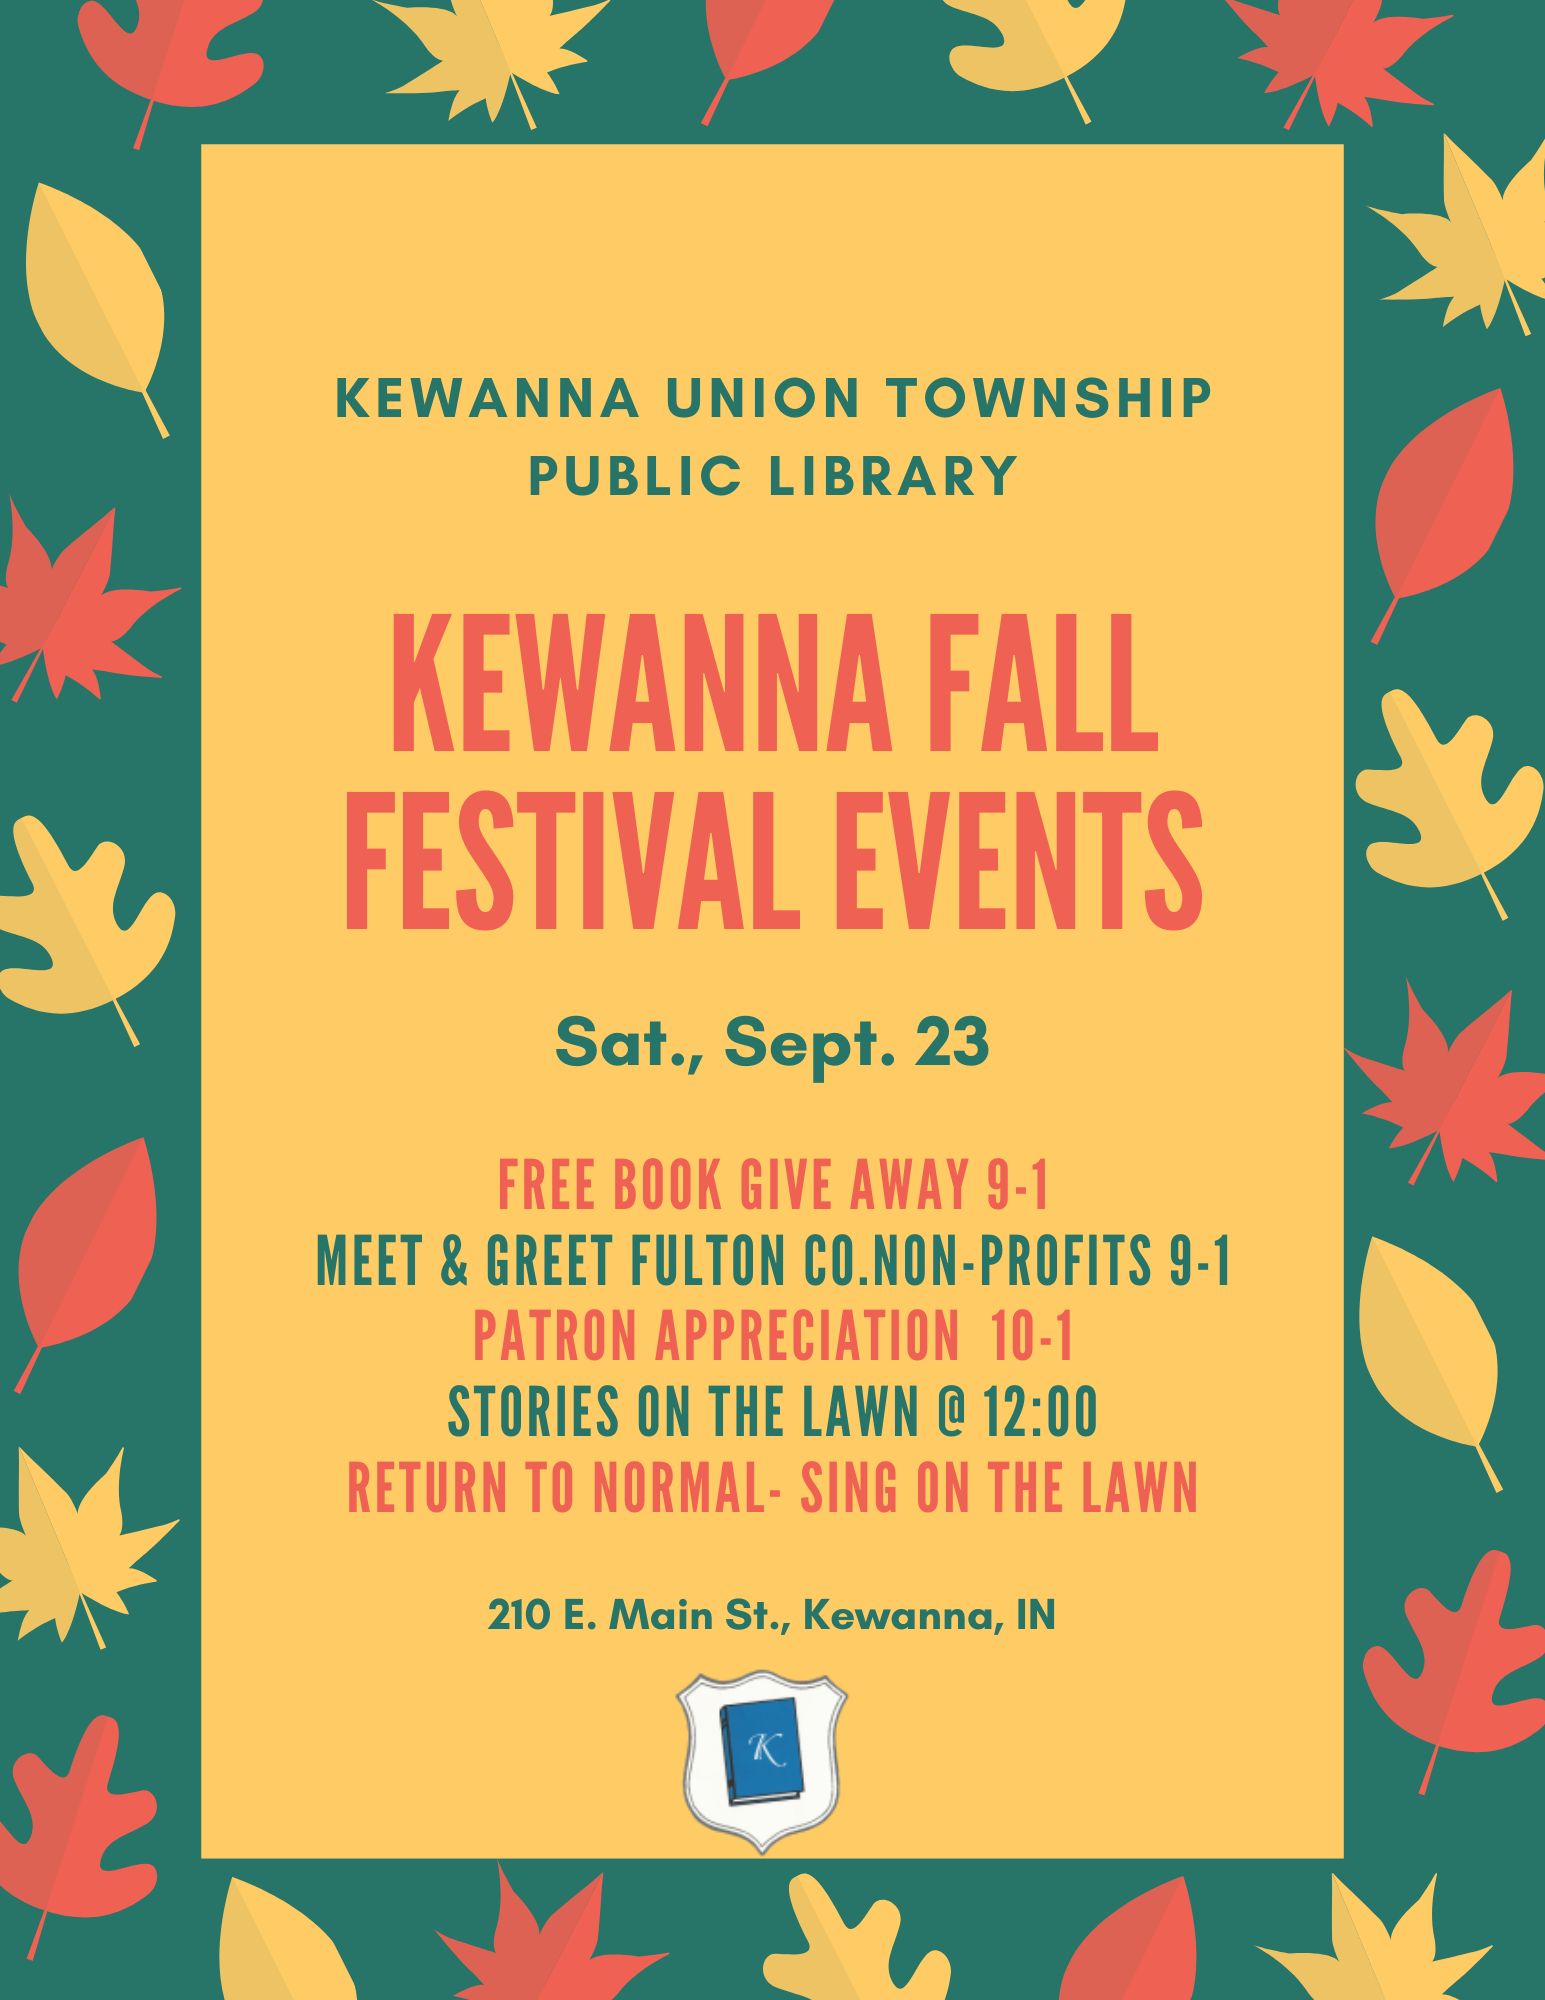 KewannaUnion Township Public Library